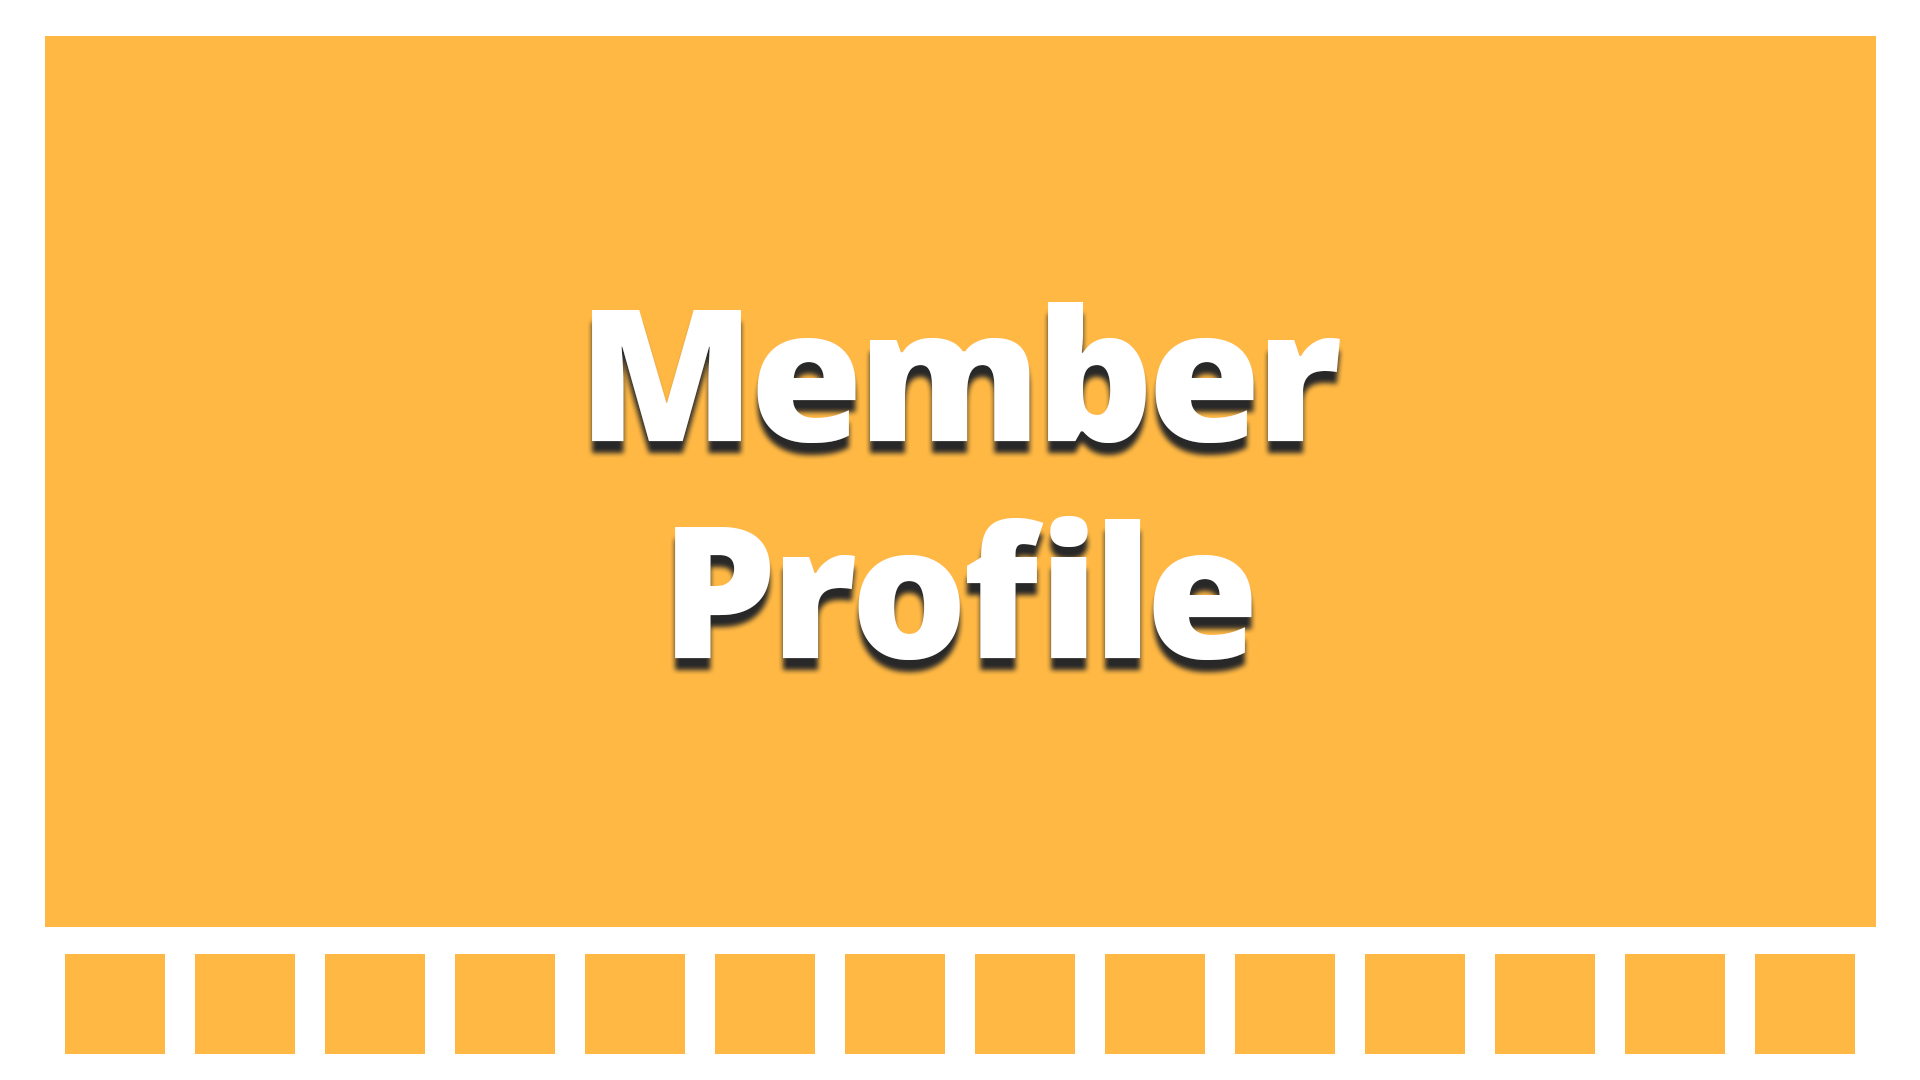 Member profile